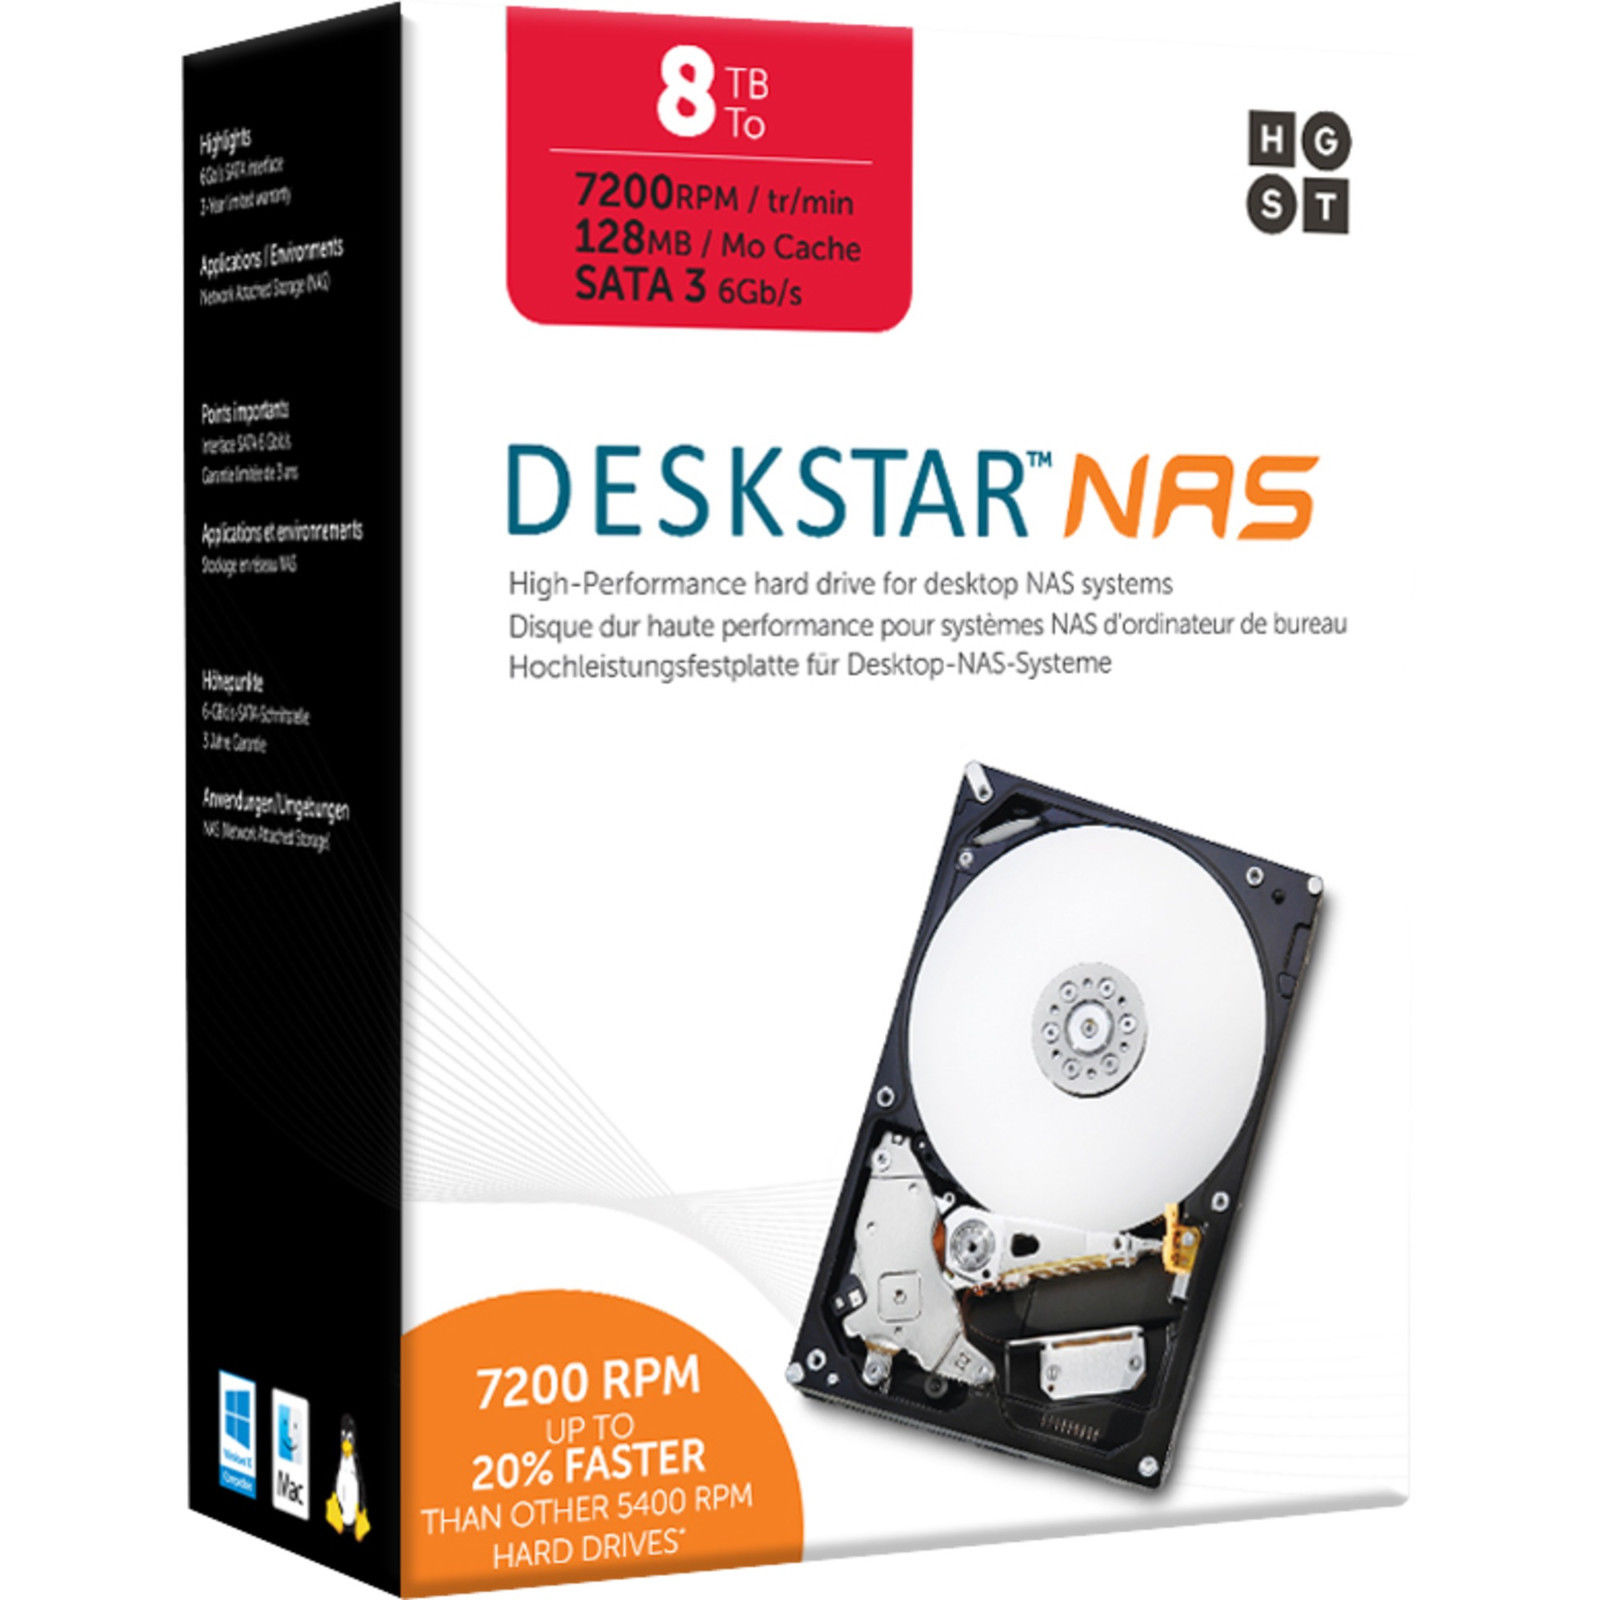 Bild zu Interne 3,5 Zoll Festplatte HGST Deskstar NAS (8 TB) für 229,90€